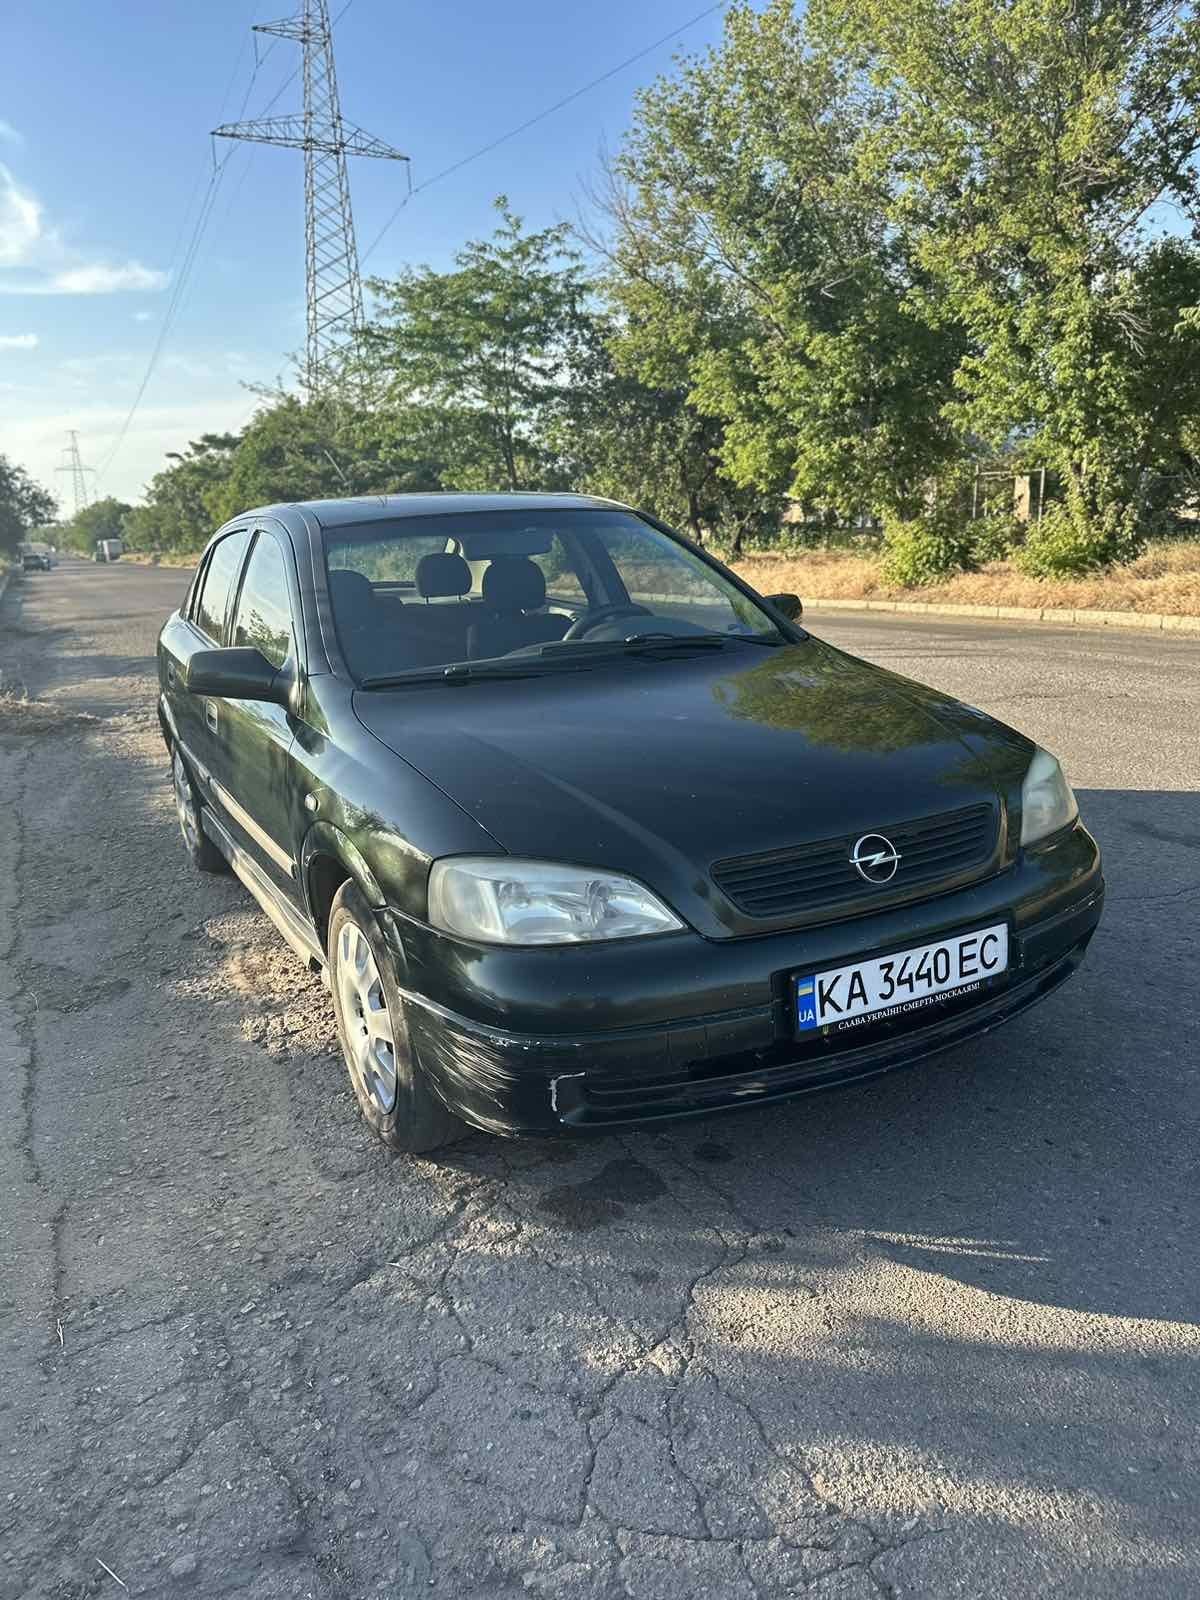 Opel Astra G 1.4 газ/бензин 2001 г